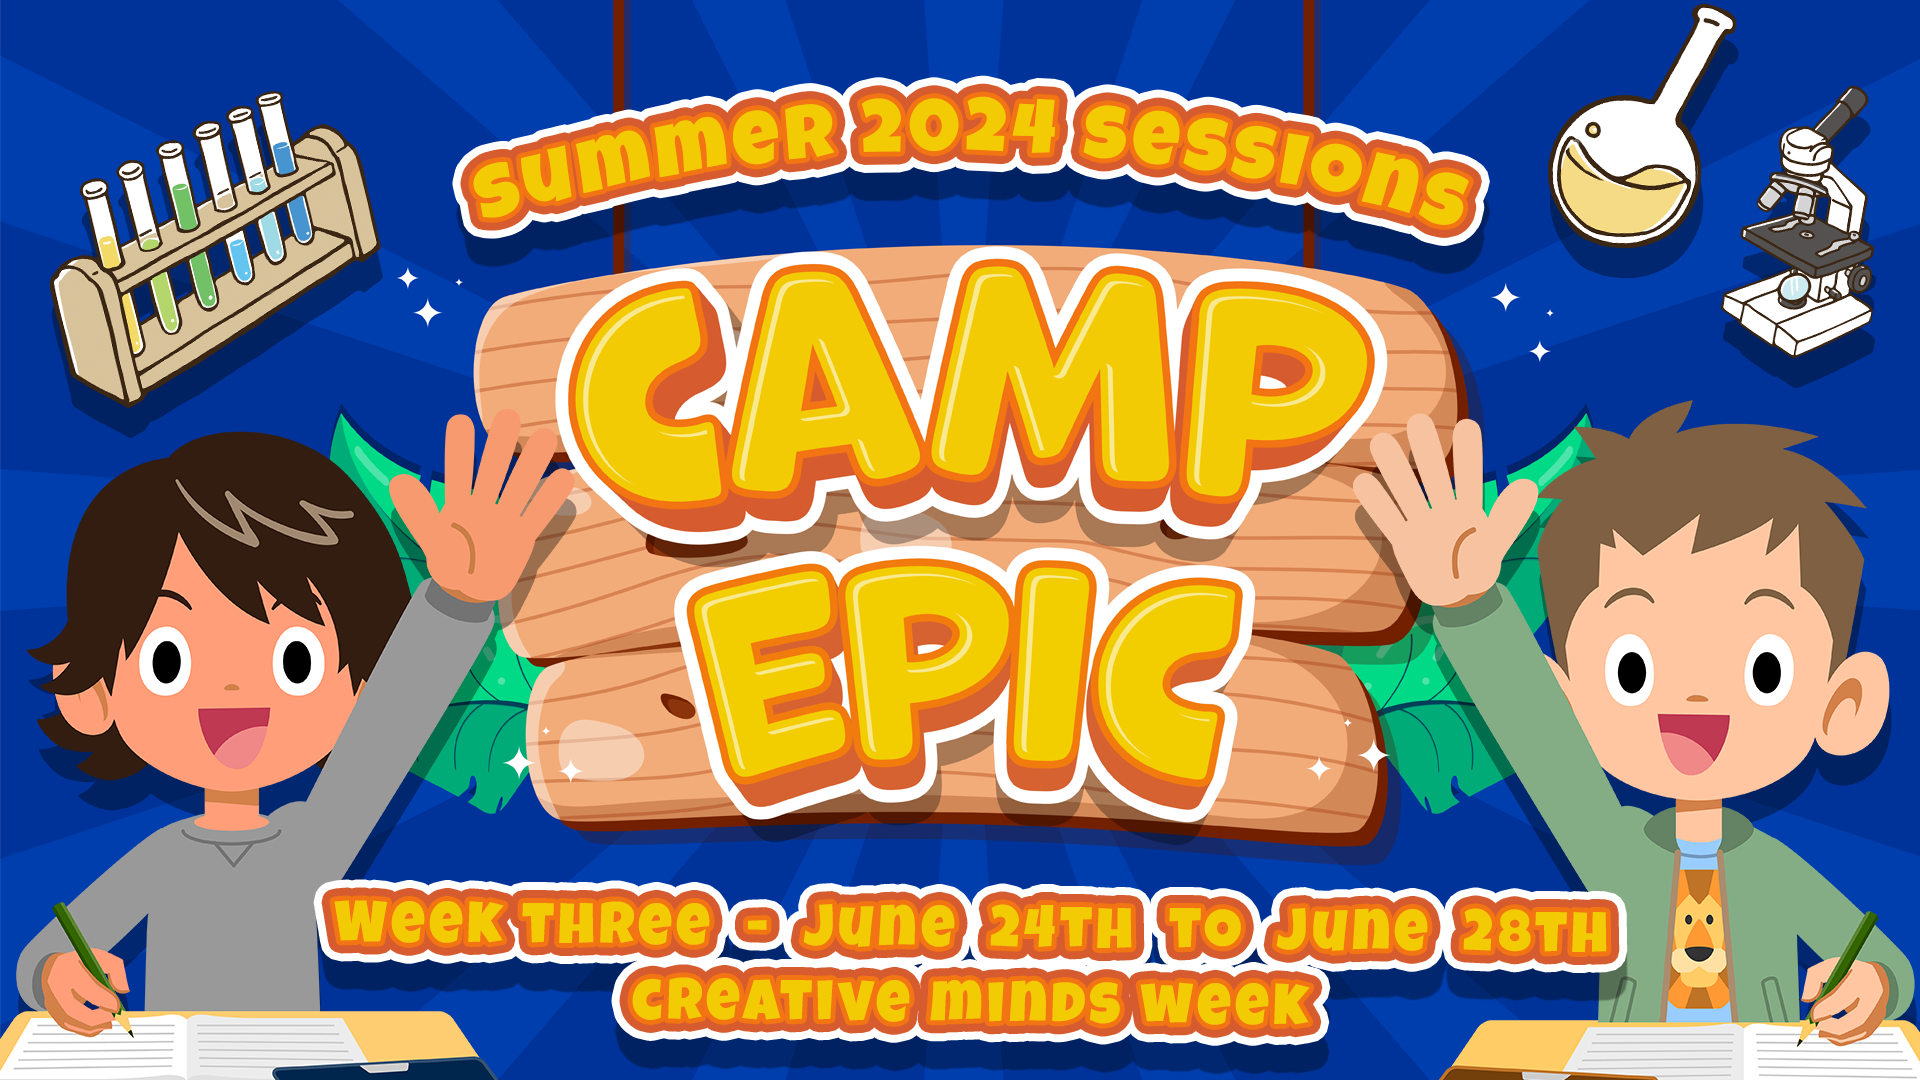 Camp Epic Week 3